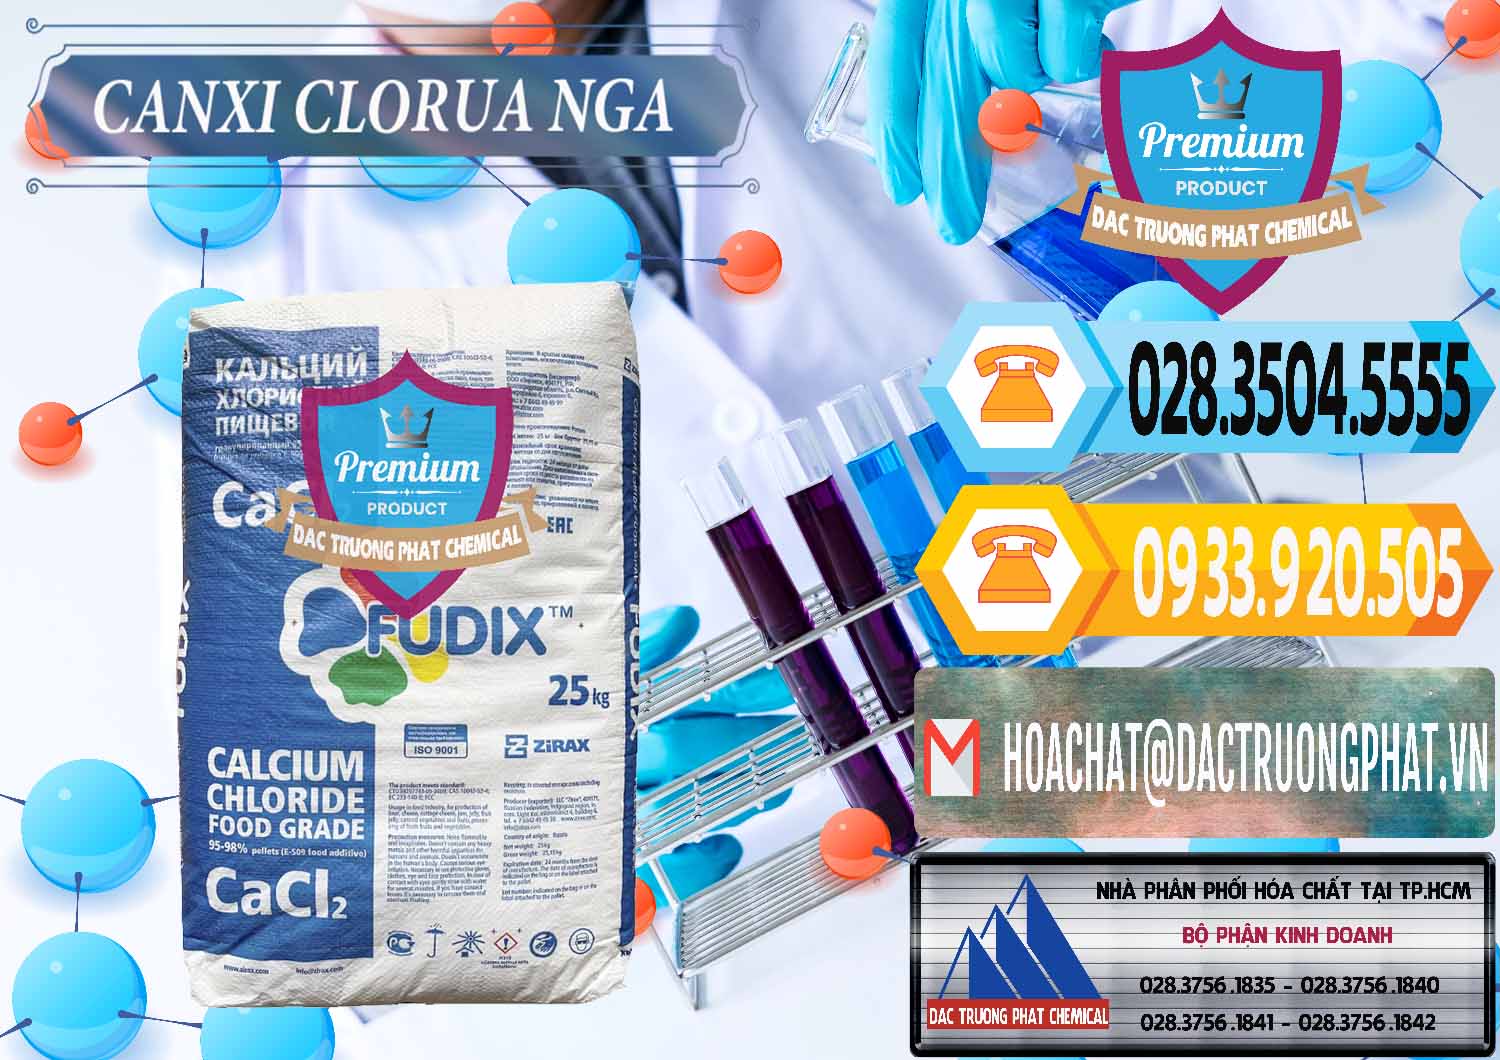 Nơi chuyên phân phối _ bán CaCl2 – Canxi Clorua Nga Russia - 0430 - Nơi cung cấp và kinh doanh hóa chất tại TP.HCM - hoachattayrua.net